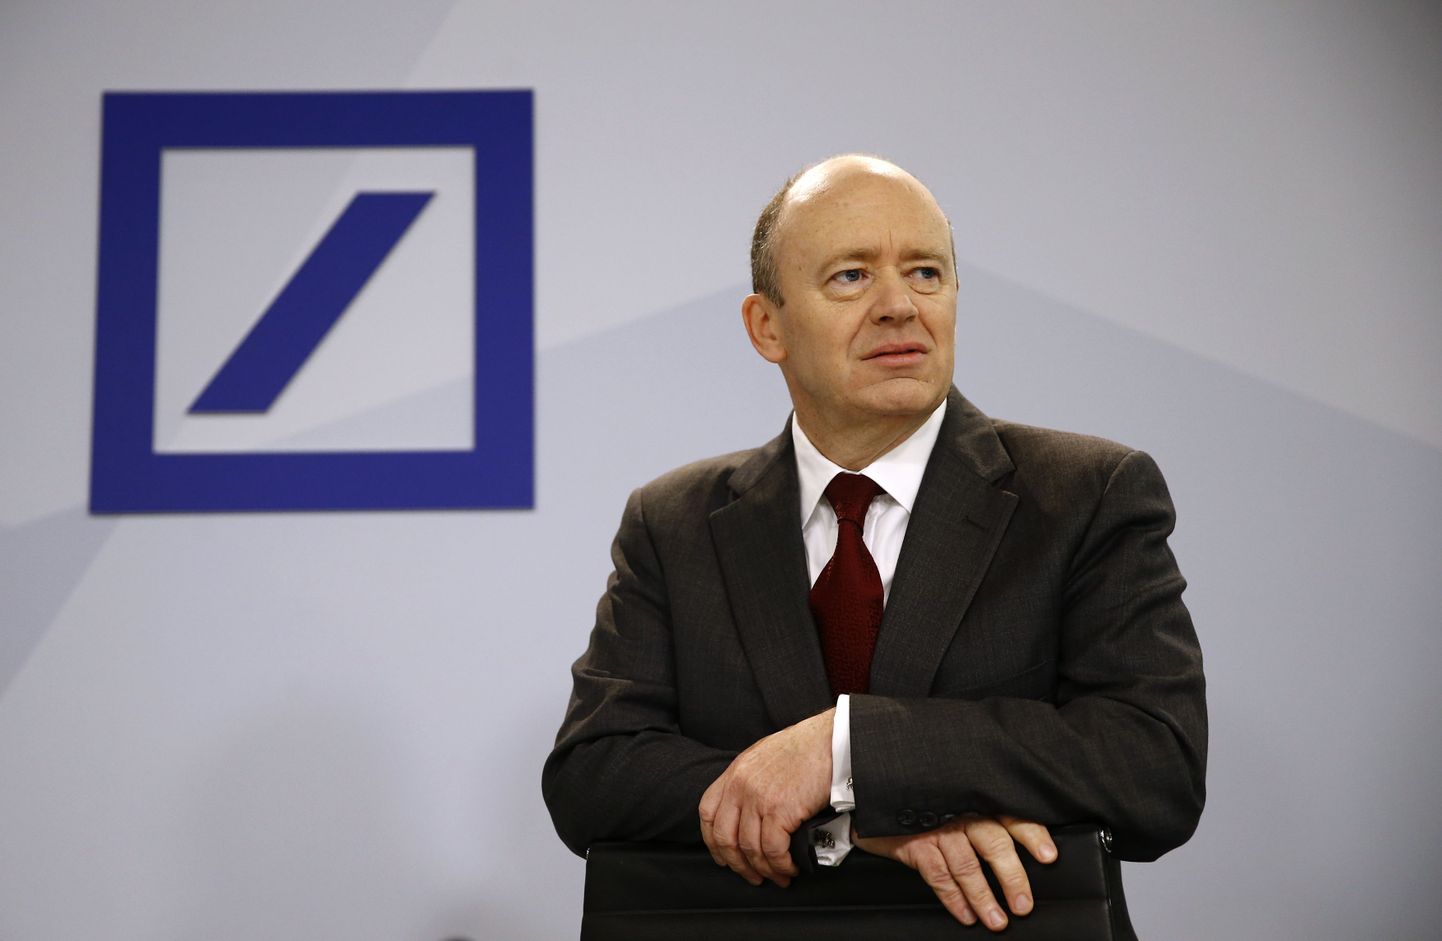 Deutsche Banki kaastegevjuht John Cryan